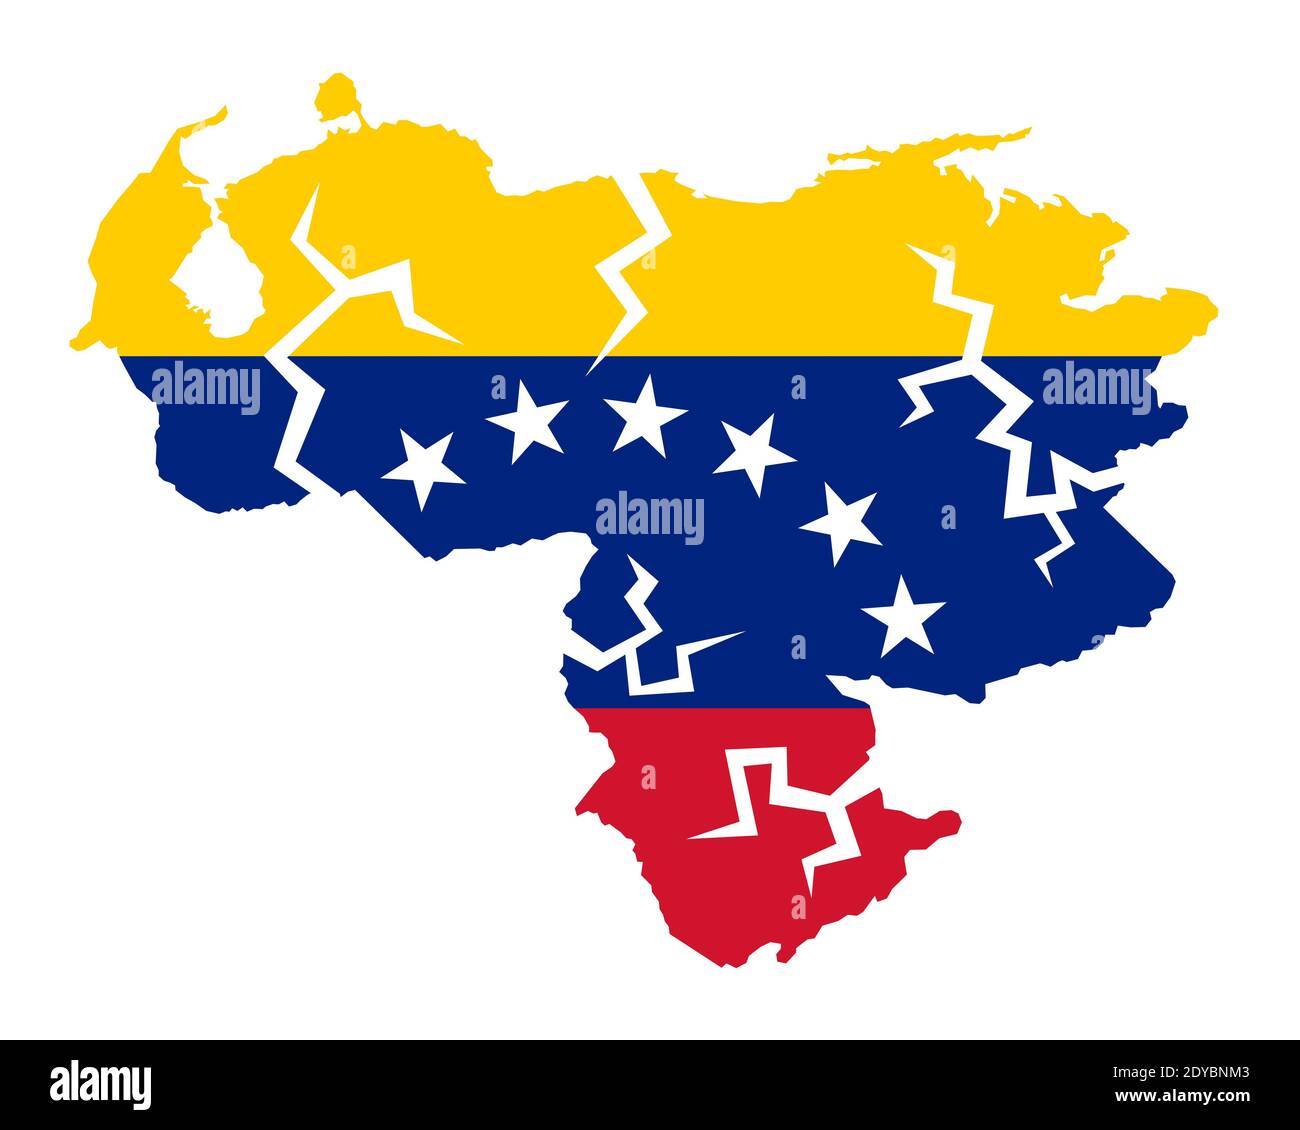 Crollo del Venezuela - mappa del paese a colori della bandiera venezuelana. Un sacco di crepe come metafora della crisi economica che porta al fallimento. Foto Stock